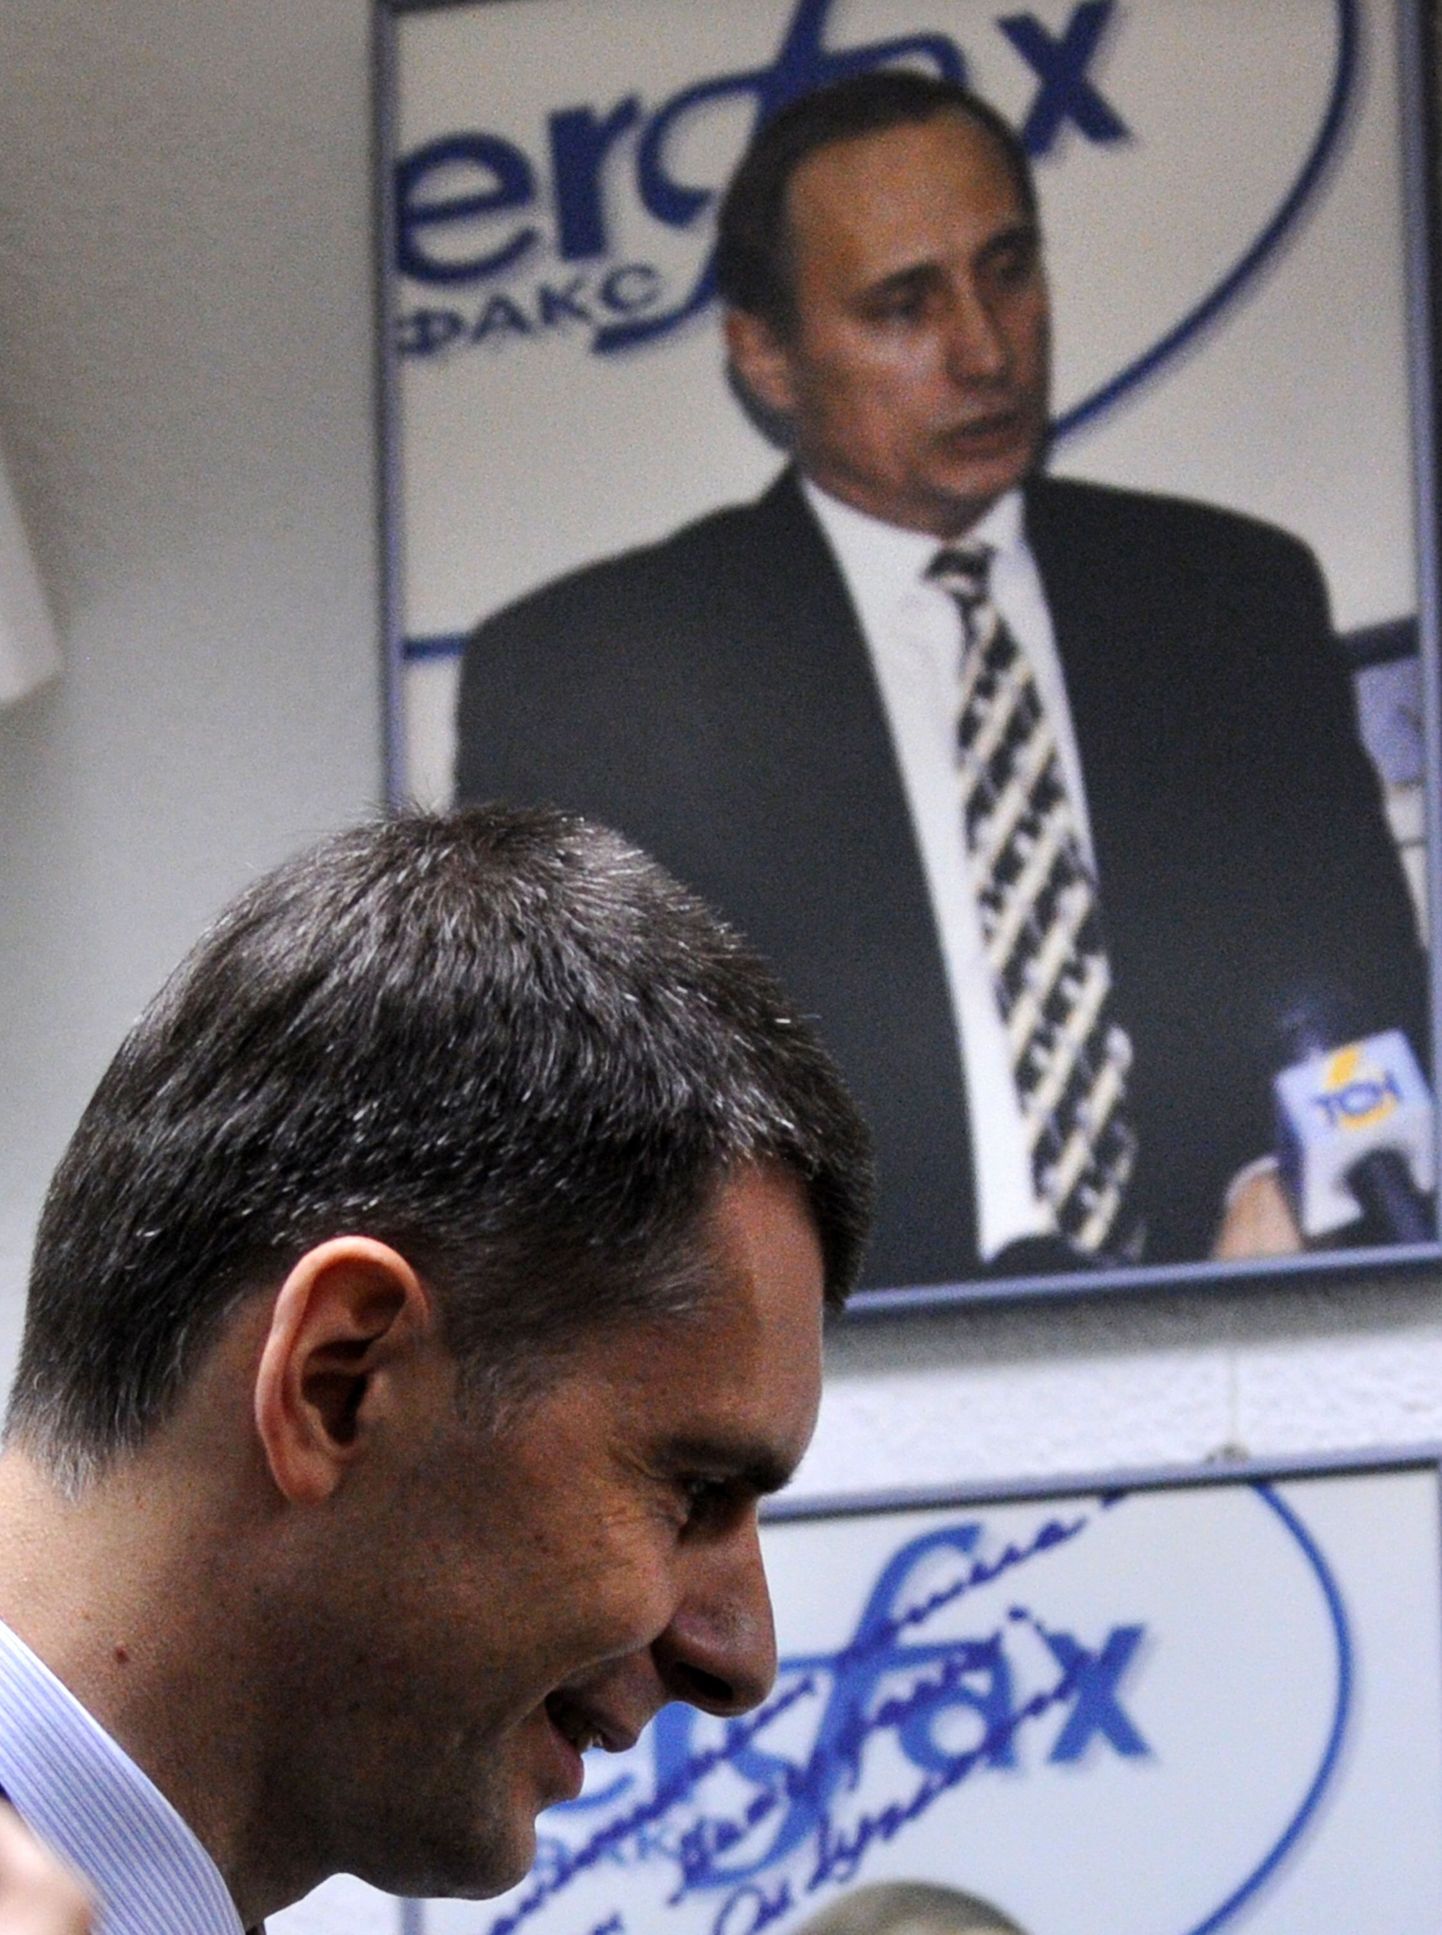 Mihhail Prohhorov Interfaxi meediakeskuses. Tagaplaanil paistab peaminister Vladimir Putini pilt.